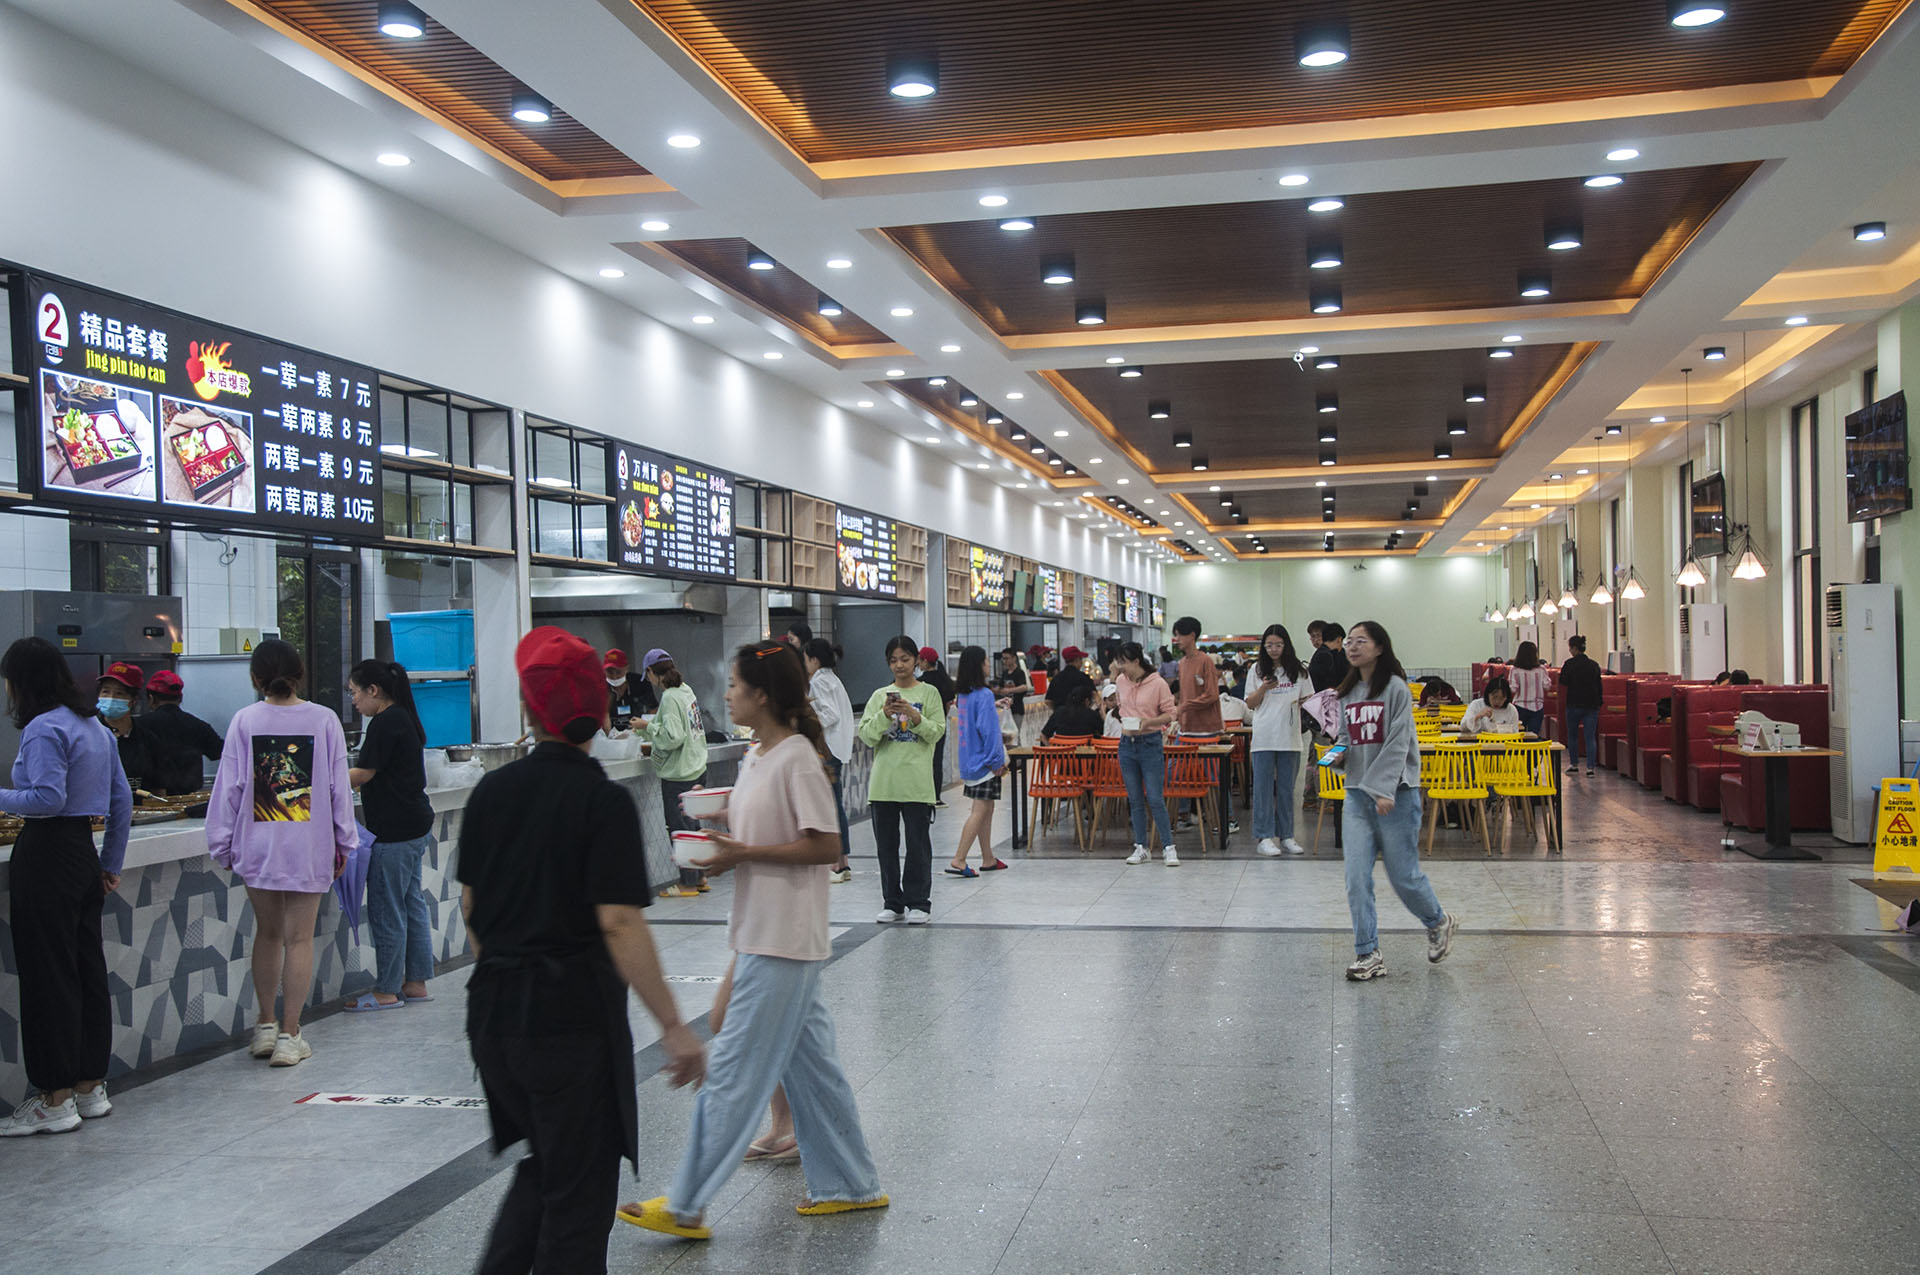 重慶人文科技學院慧園食堂、慧園特色餐廳